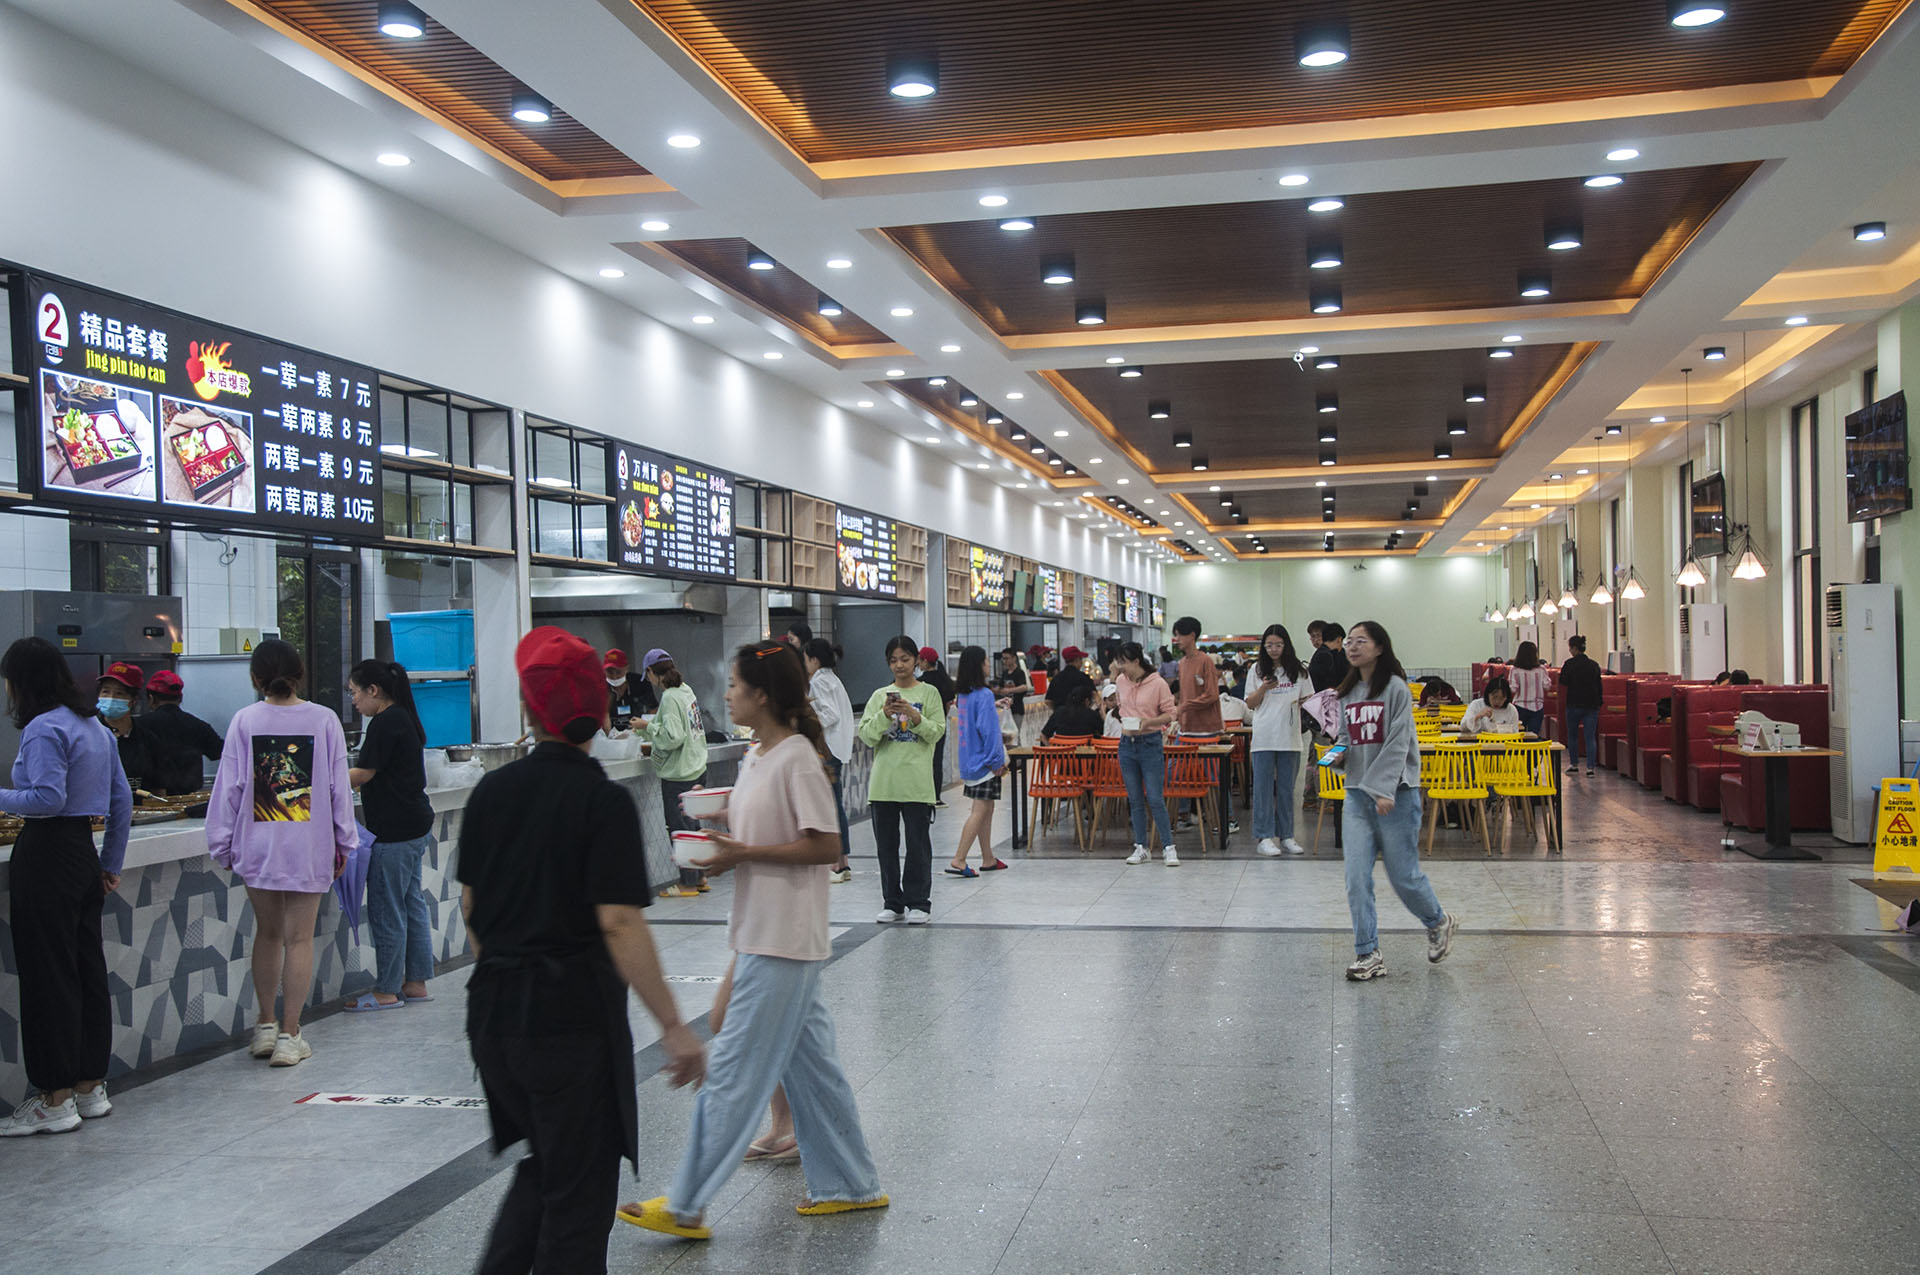 重慶人文科技學院慧園食堂、慧園特色餐廳